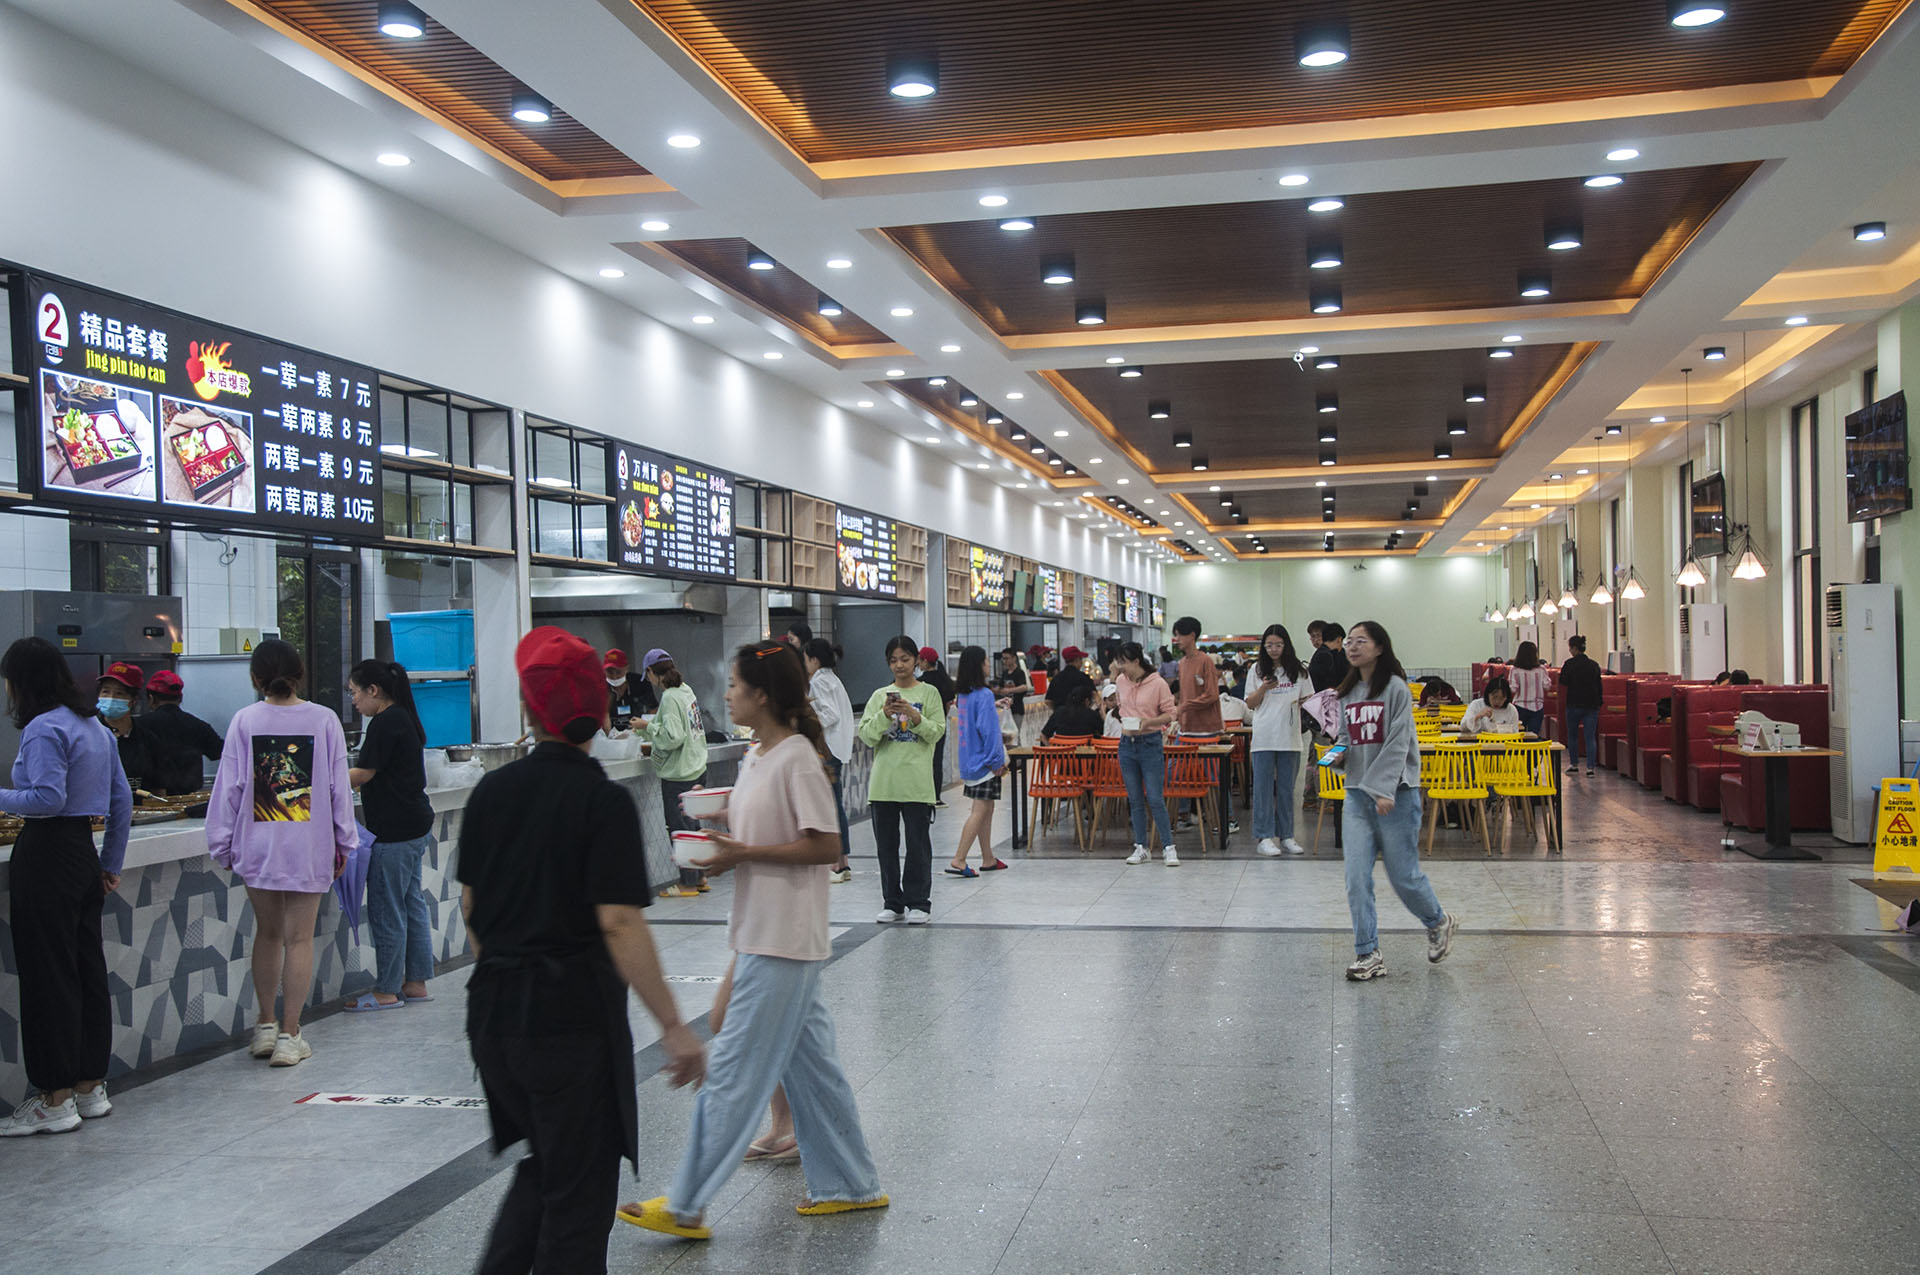 重慶人文科技學院慧園食堂、慧園特色餐廳